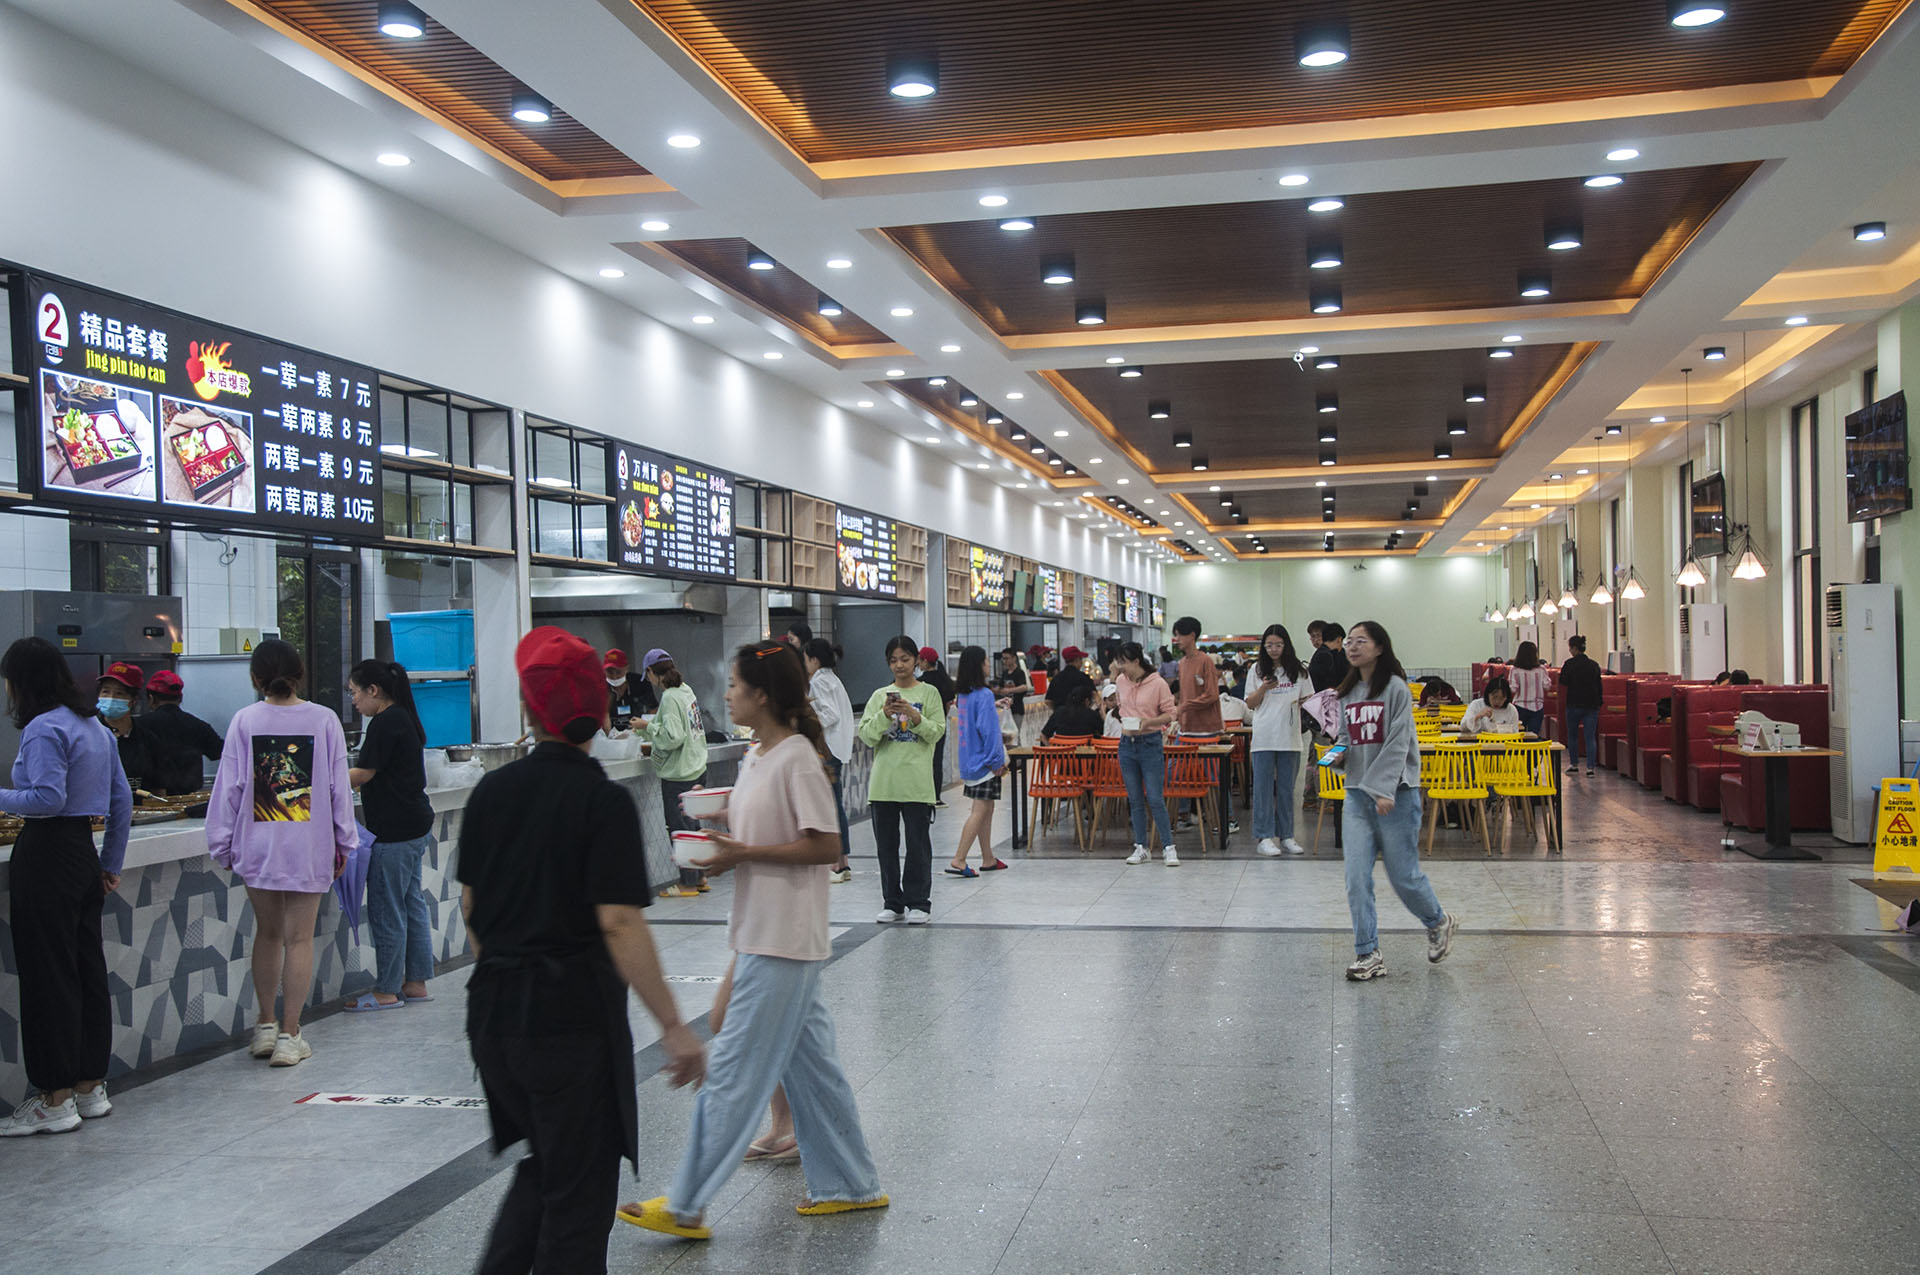 重慶人文科技學院慧園食堂、慧園特色餐廳